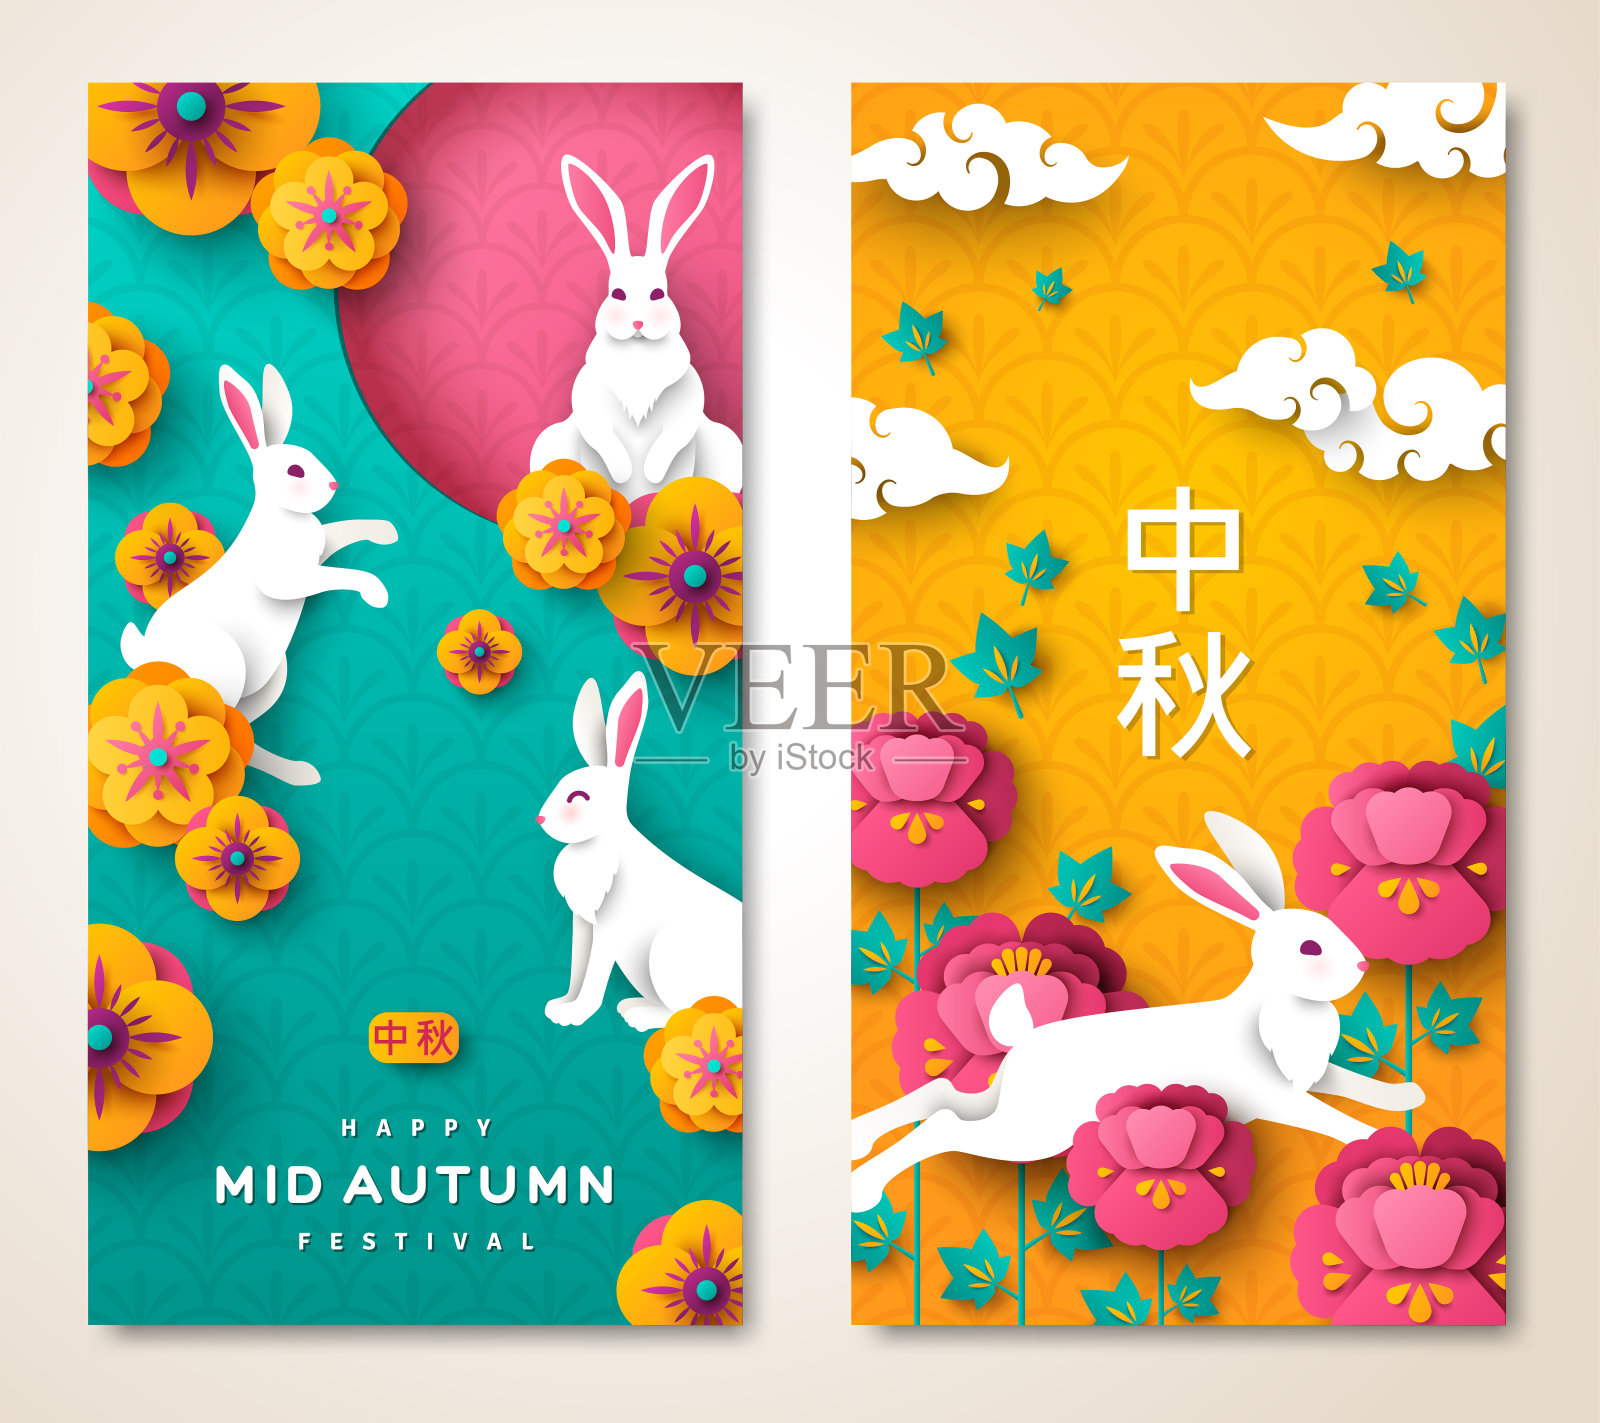 秋夕节两面海报设计模板素材